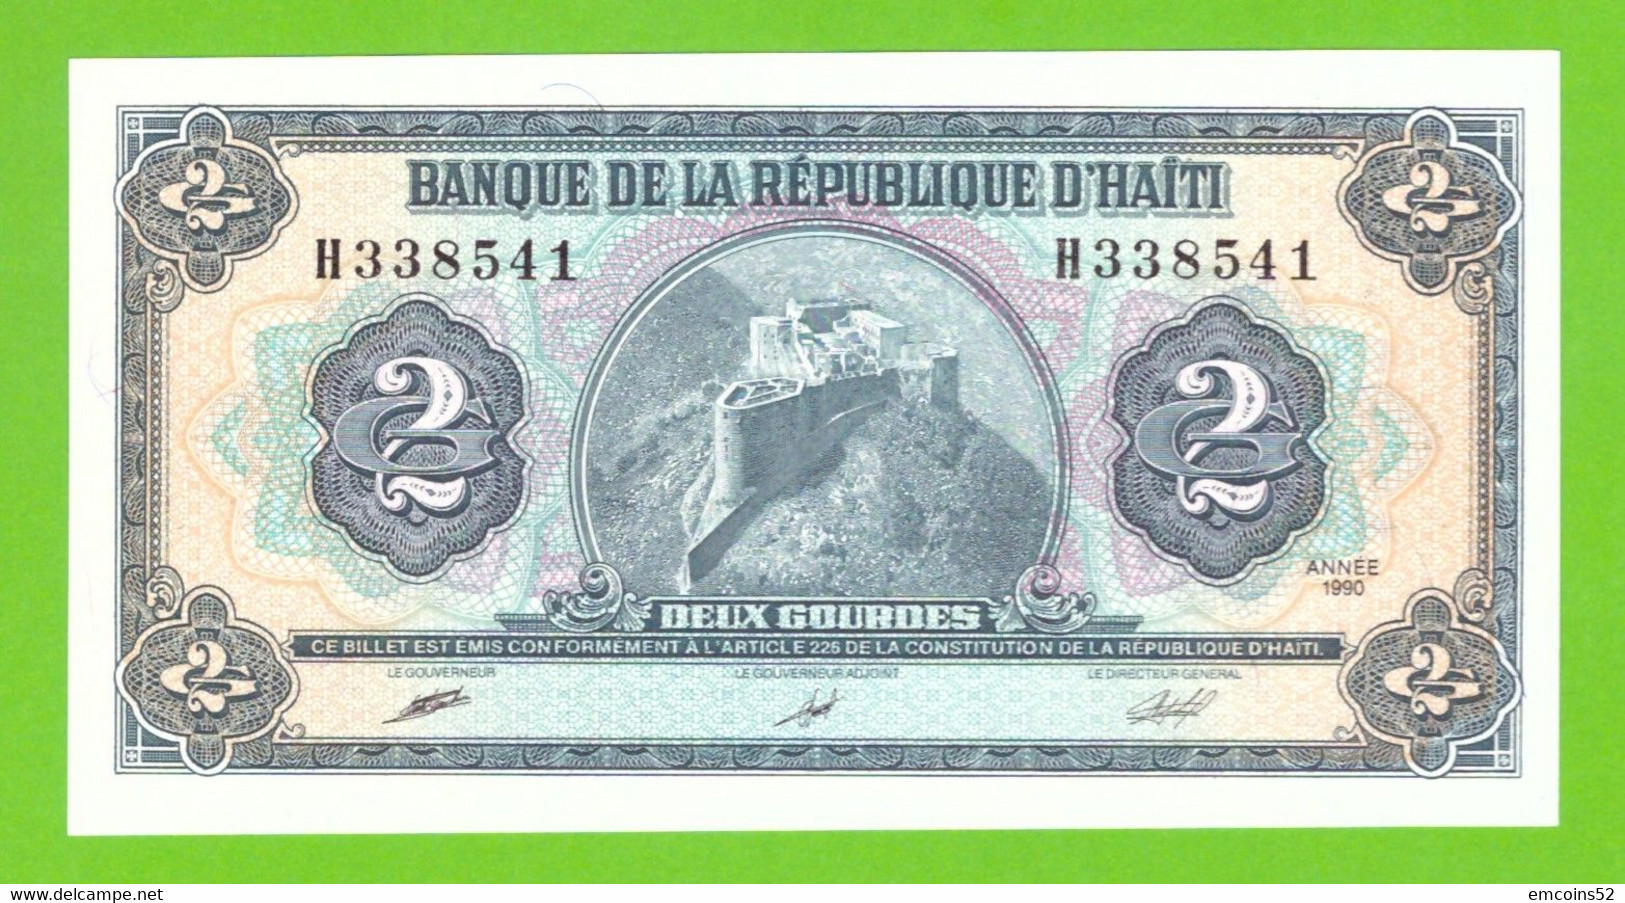 HAITI 2 GOURDES 1990  P-254 UNC - Haïti